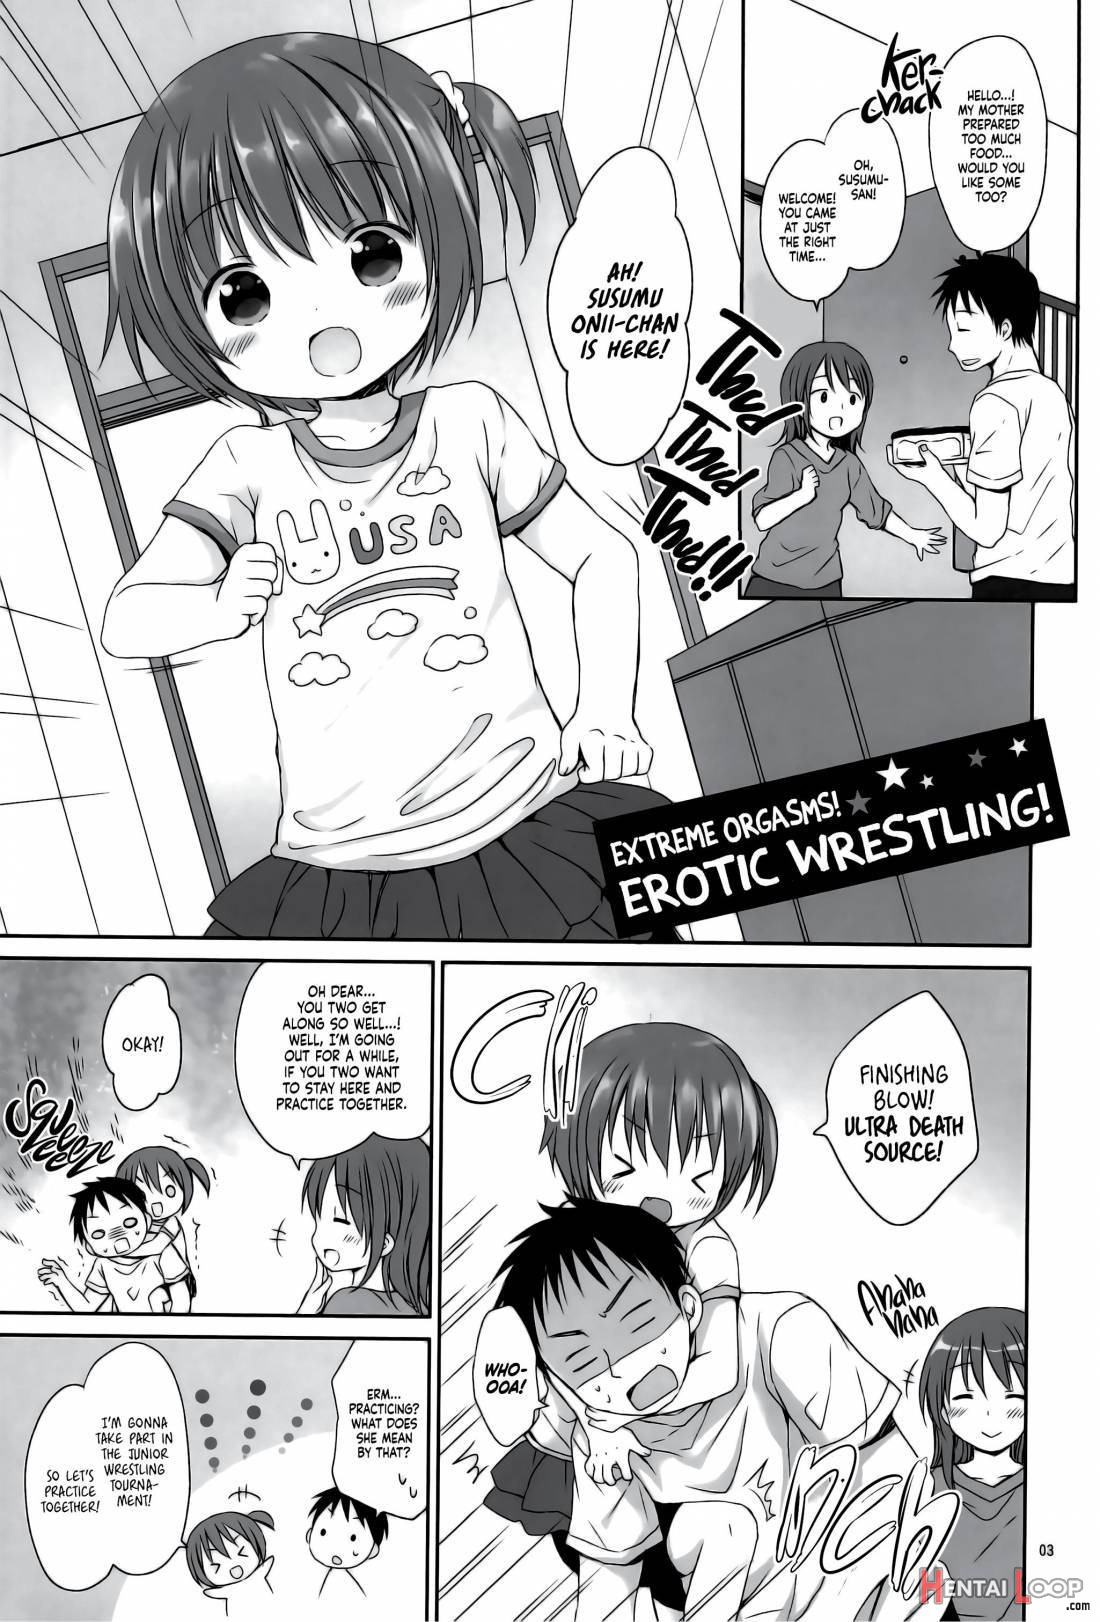 Ikisugi! Ecchi Na Wrestling page 2